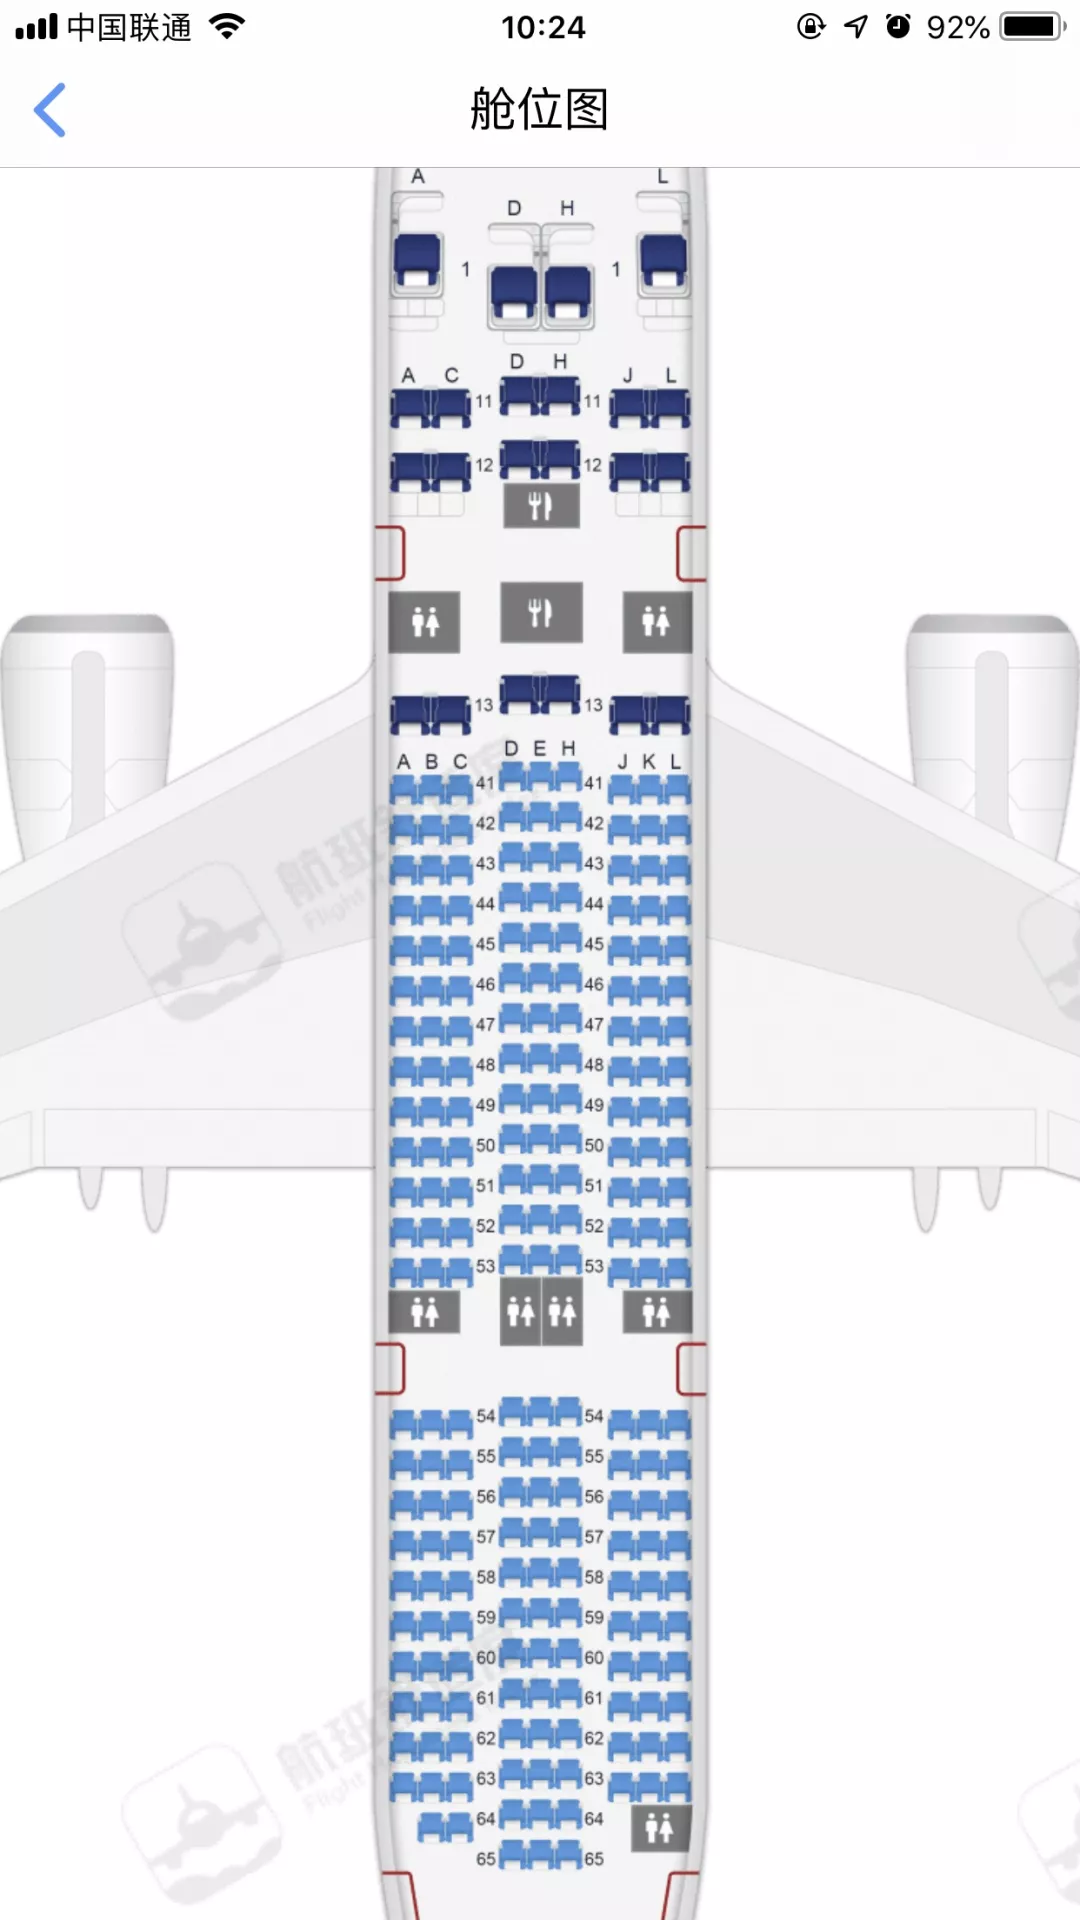 24排小飞机座位分布图图片